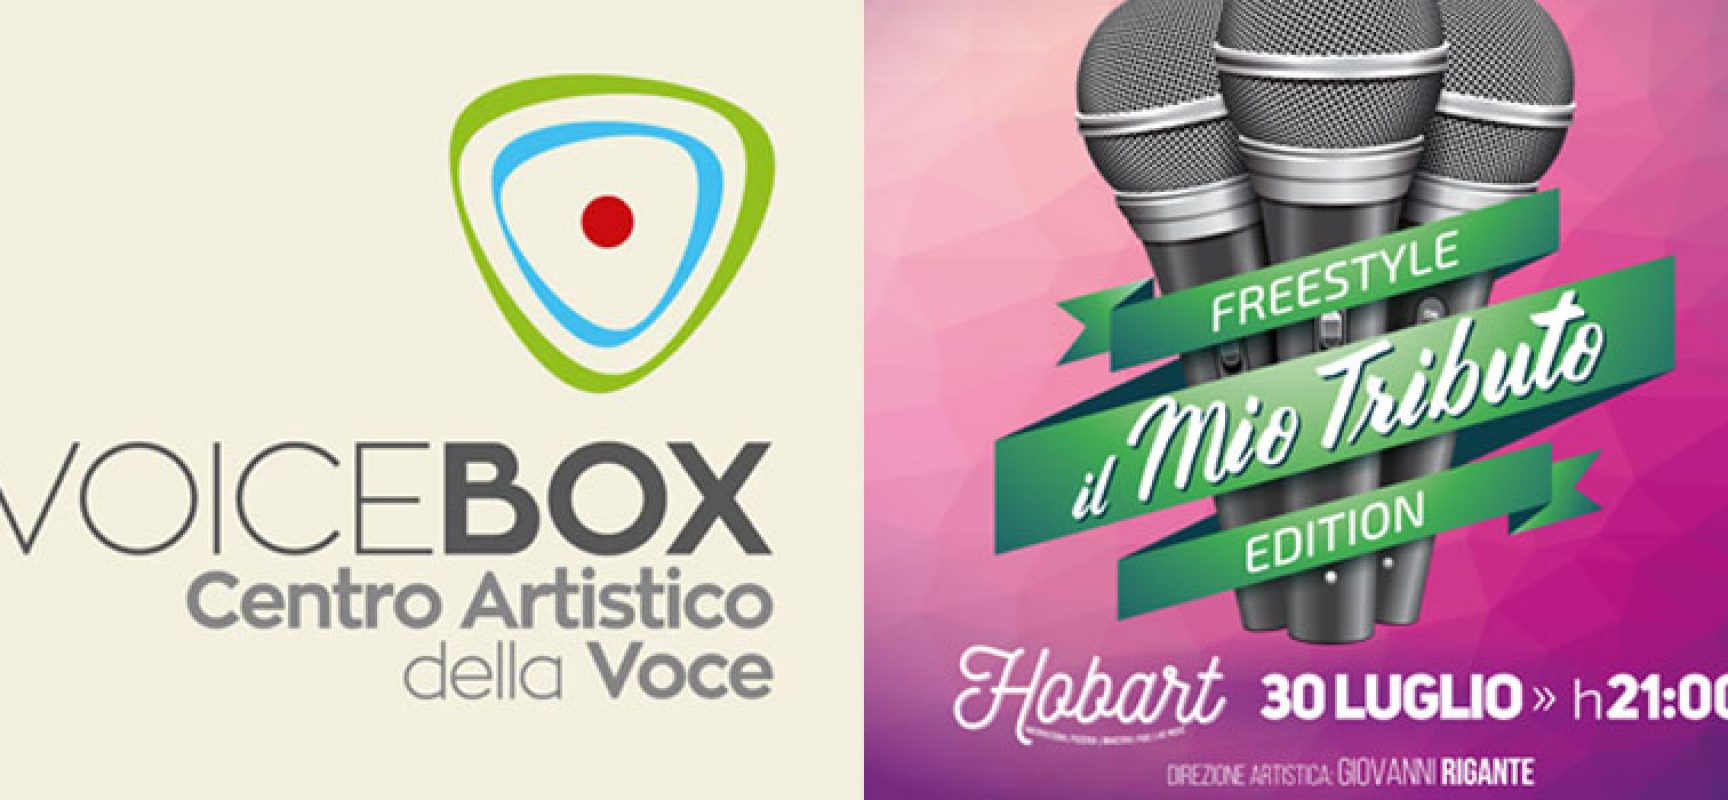 L’accademia Voice Box all’Hobart per una serata di grande musica